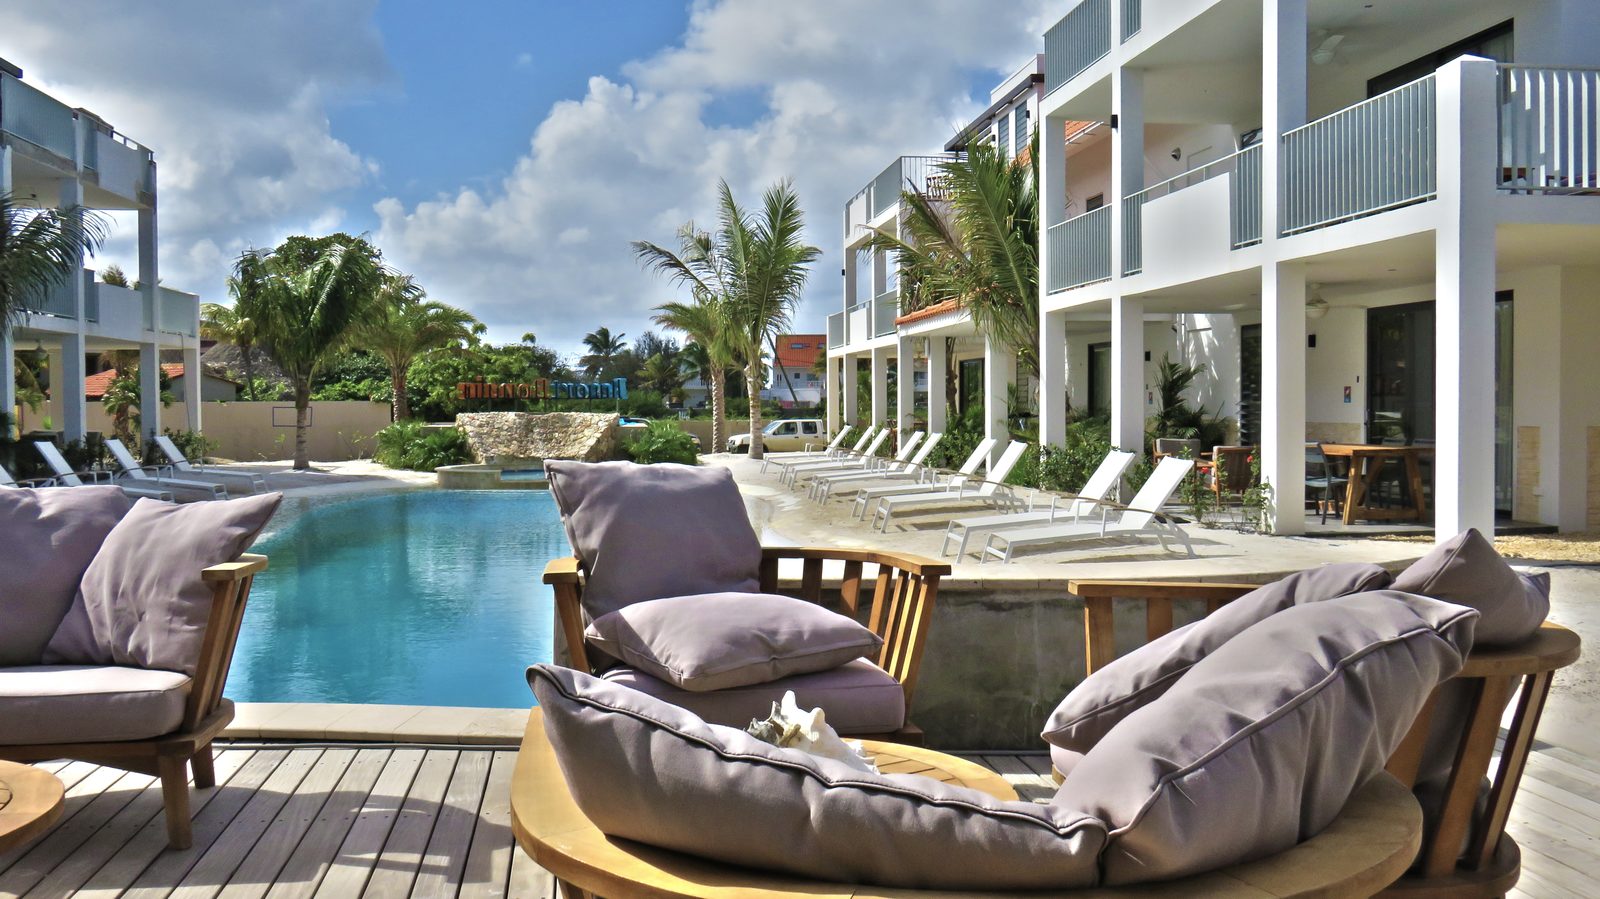 O Resort Bonaire permite que hóspedes de todas as idades apreciem esta bela ilha. Veja as fotos e reserve a sua estadia em Bonaire!